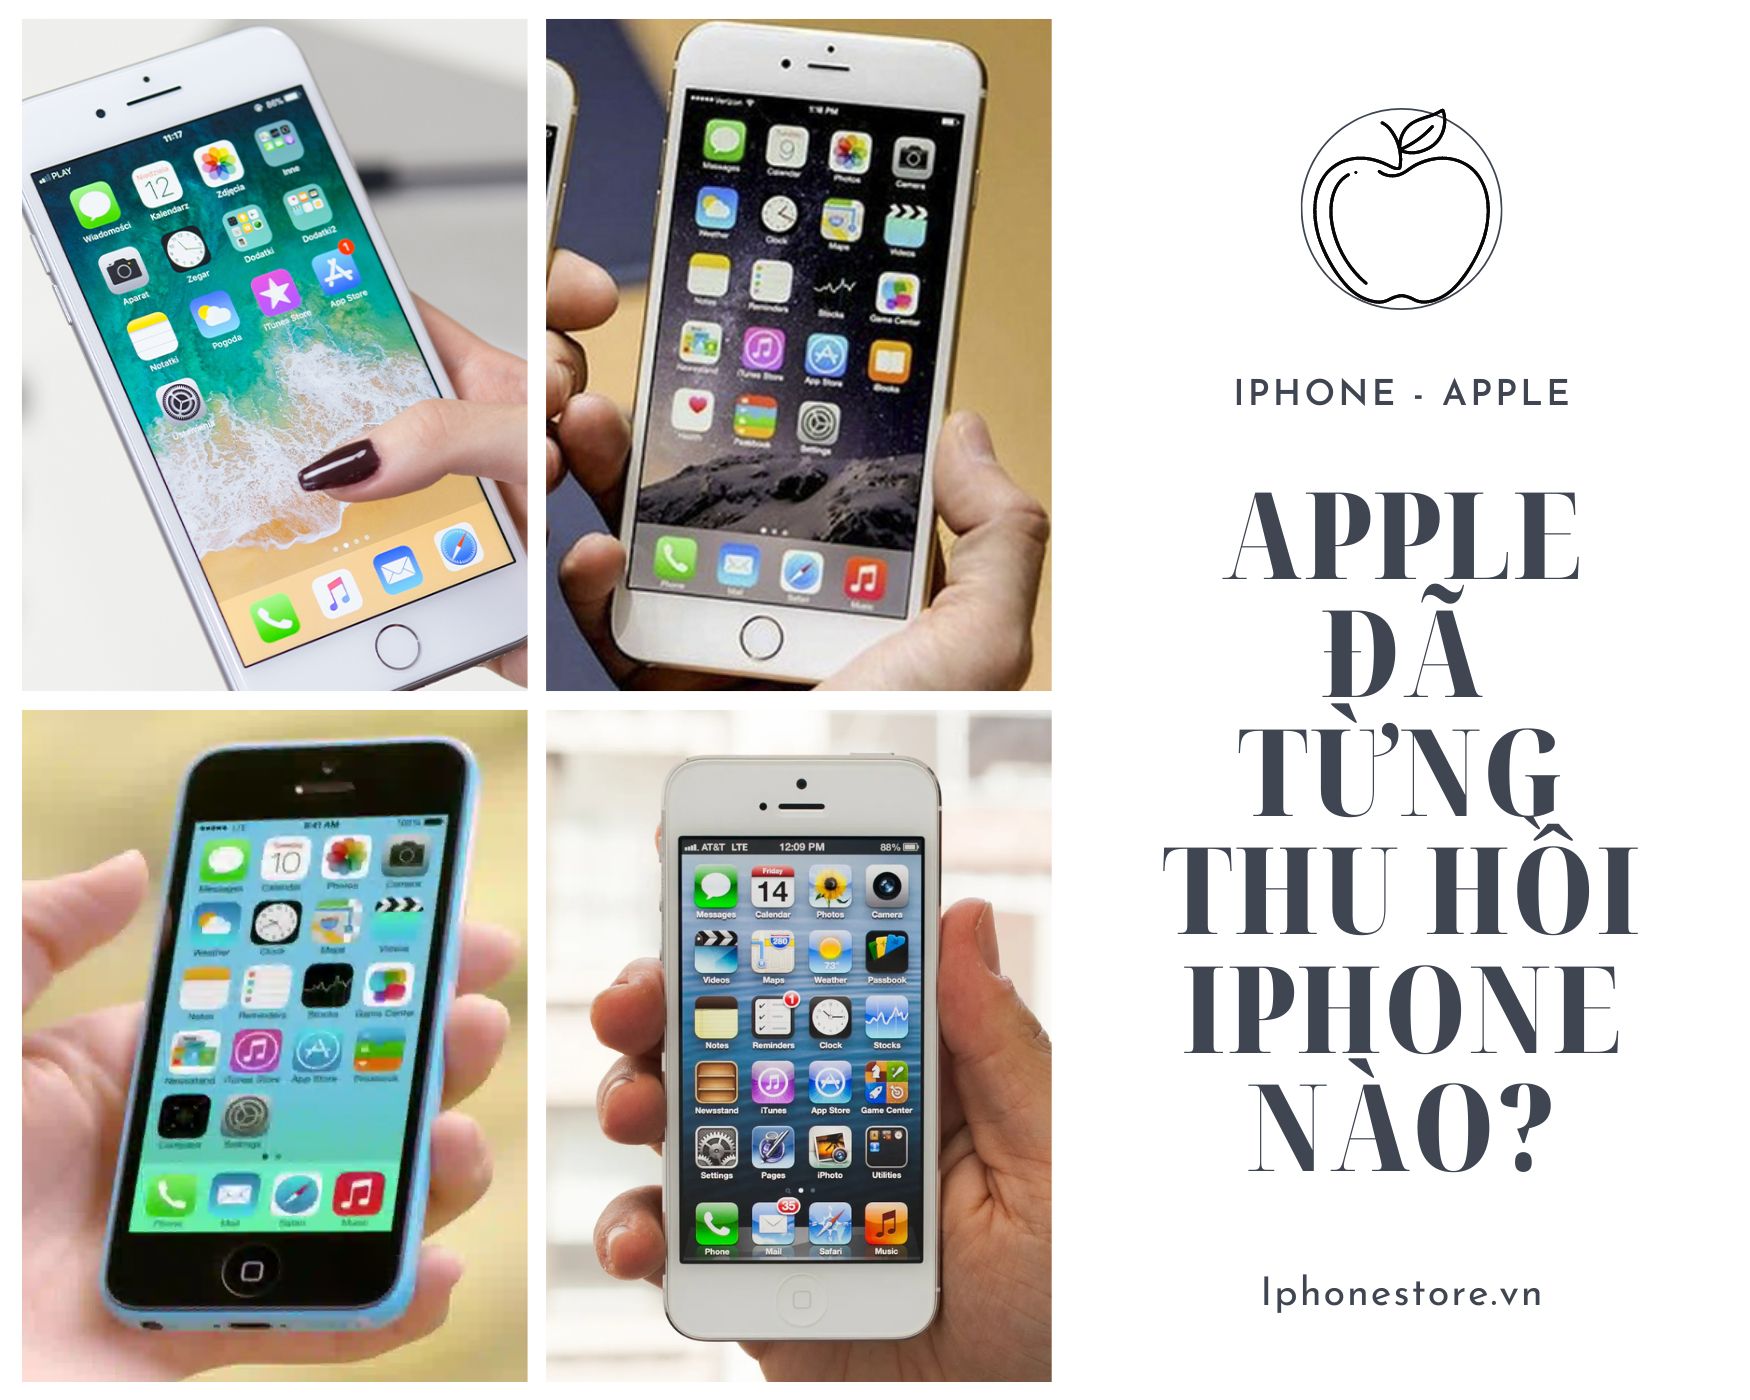 Apple đã thu hồi Iphone nào?